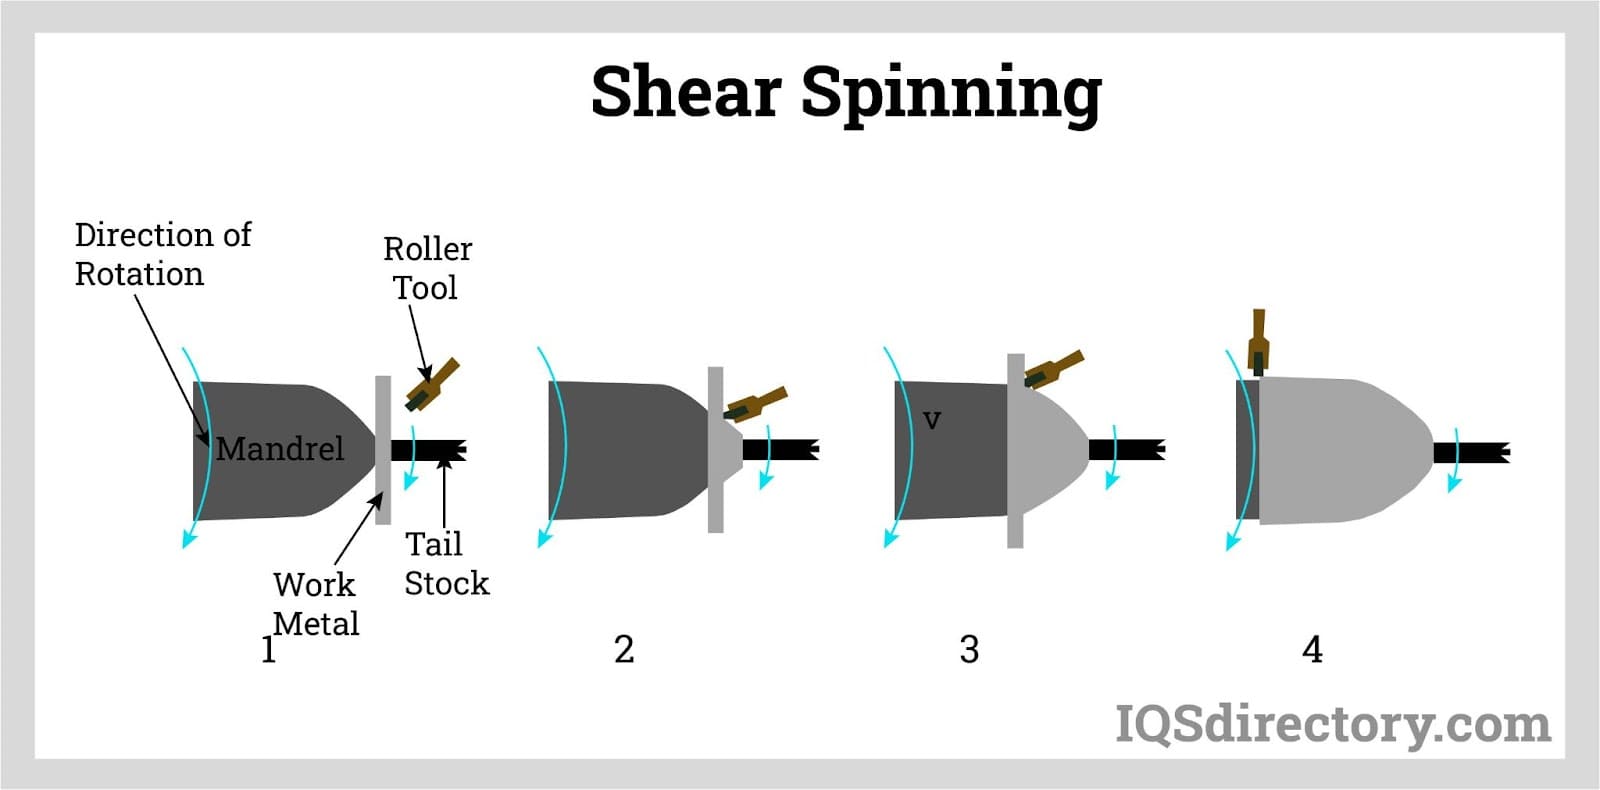 Shear Spinning